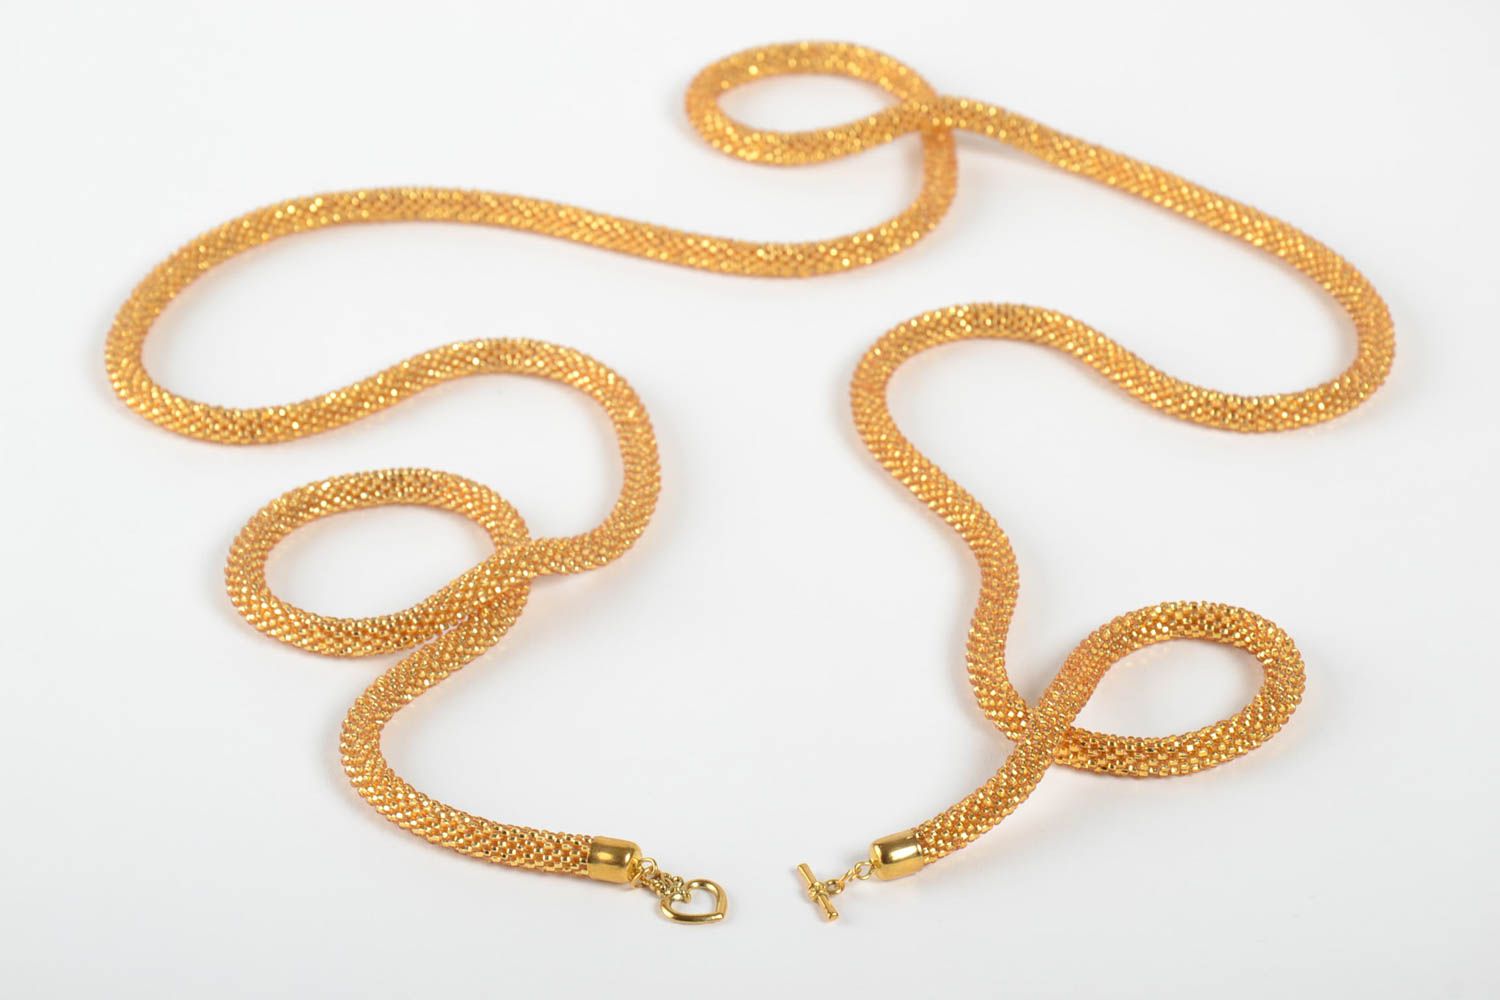 Ожерелье из бисера длинное золотистое красивое необычное ручной работы фото 4